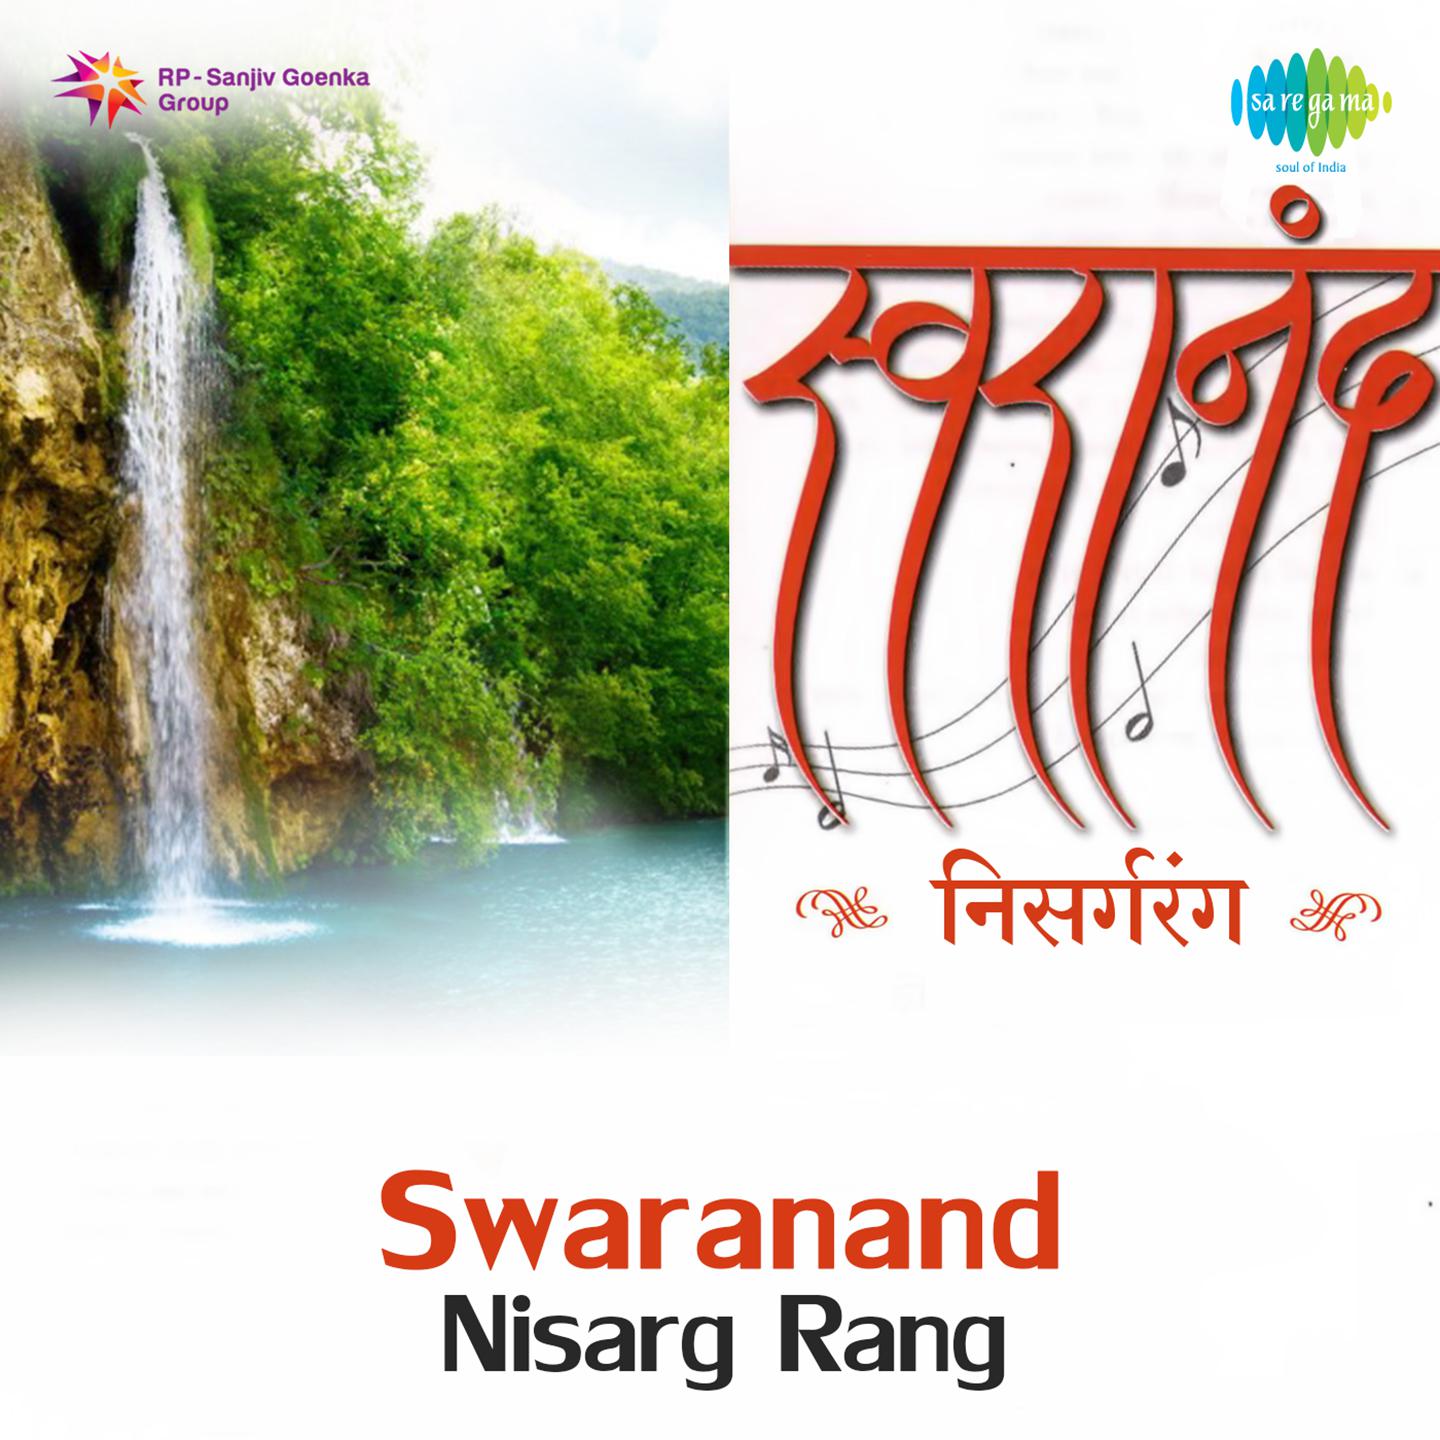 Swaranand Nisarg Rang